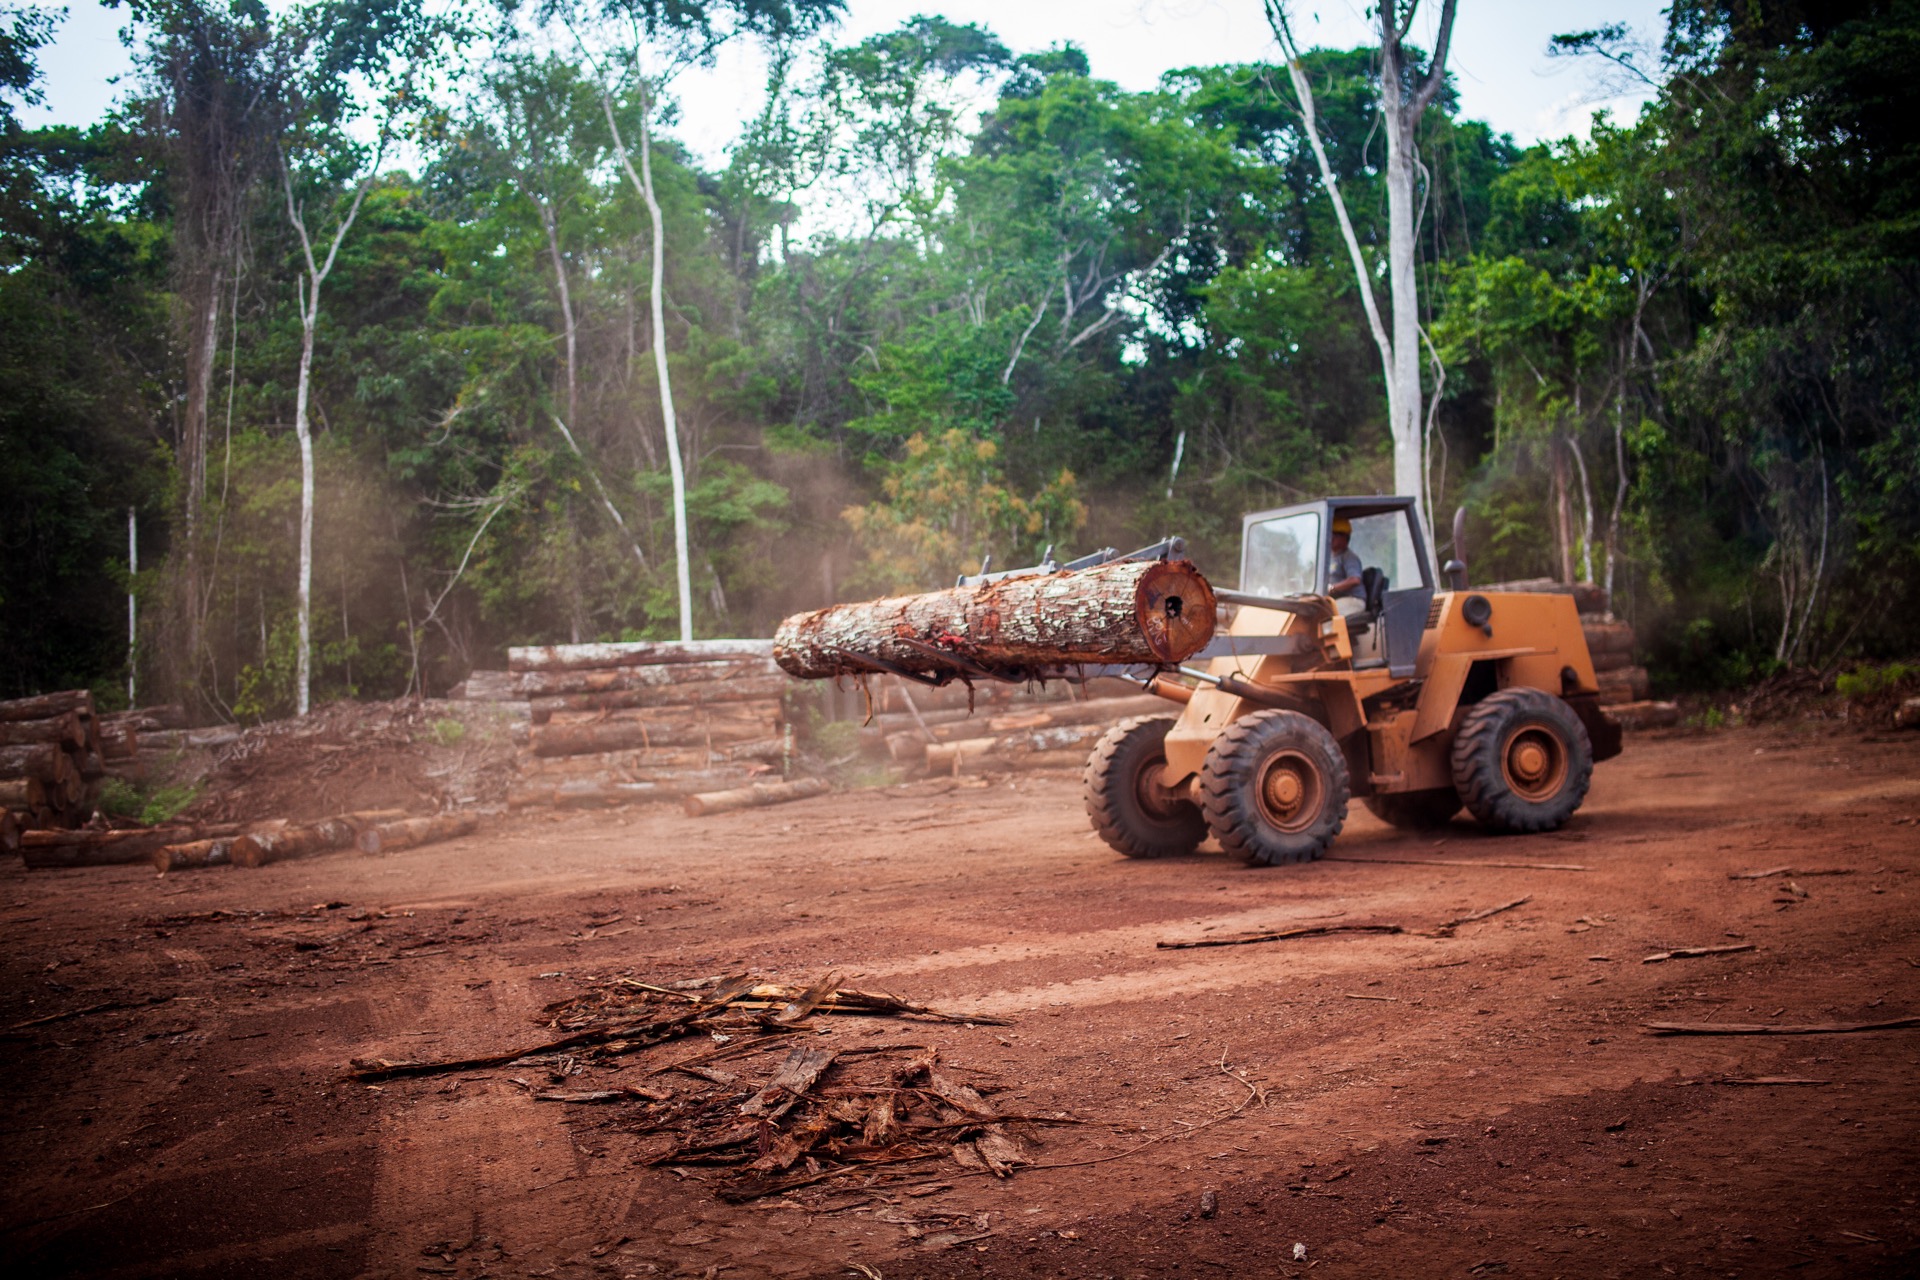 Des rondins d'arbres exotiques, acheminés dans une scierie implantée dans la forêt amazonienne au Brésil. © Marcio Isensee e Sá, Adobe Stock